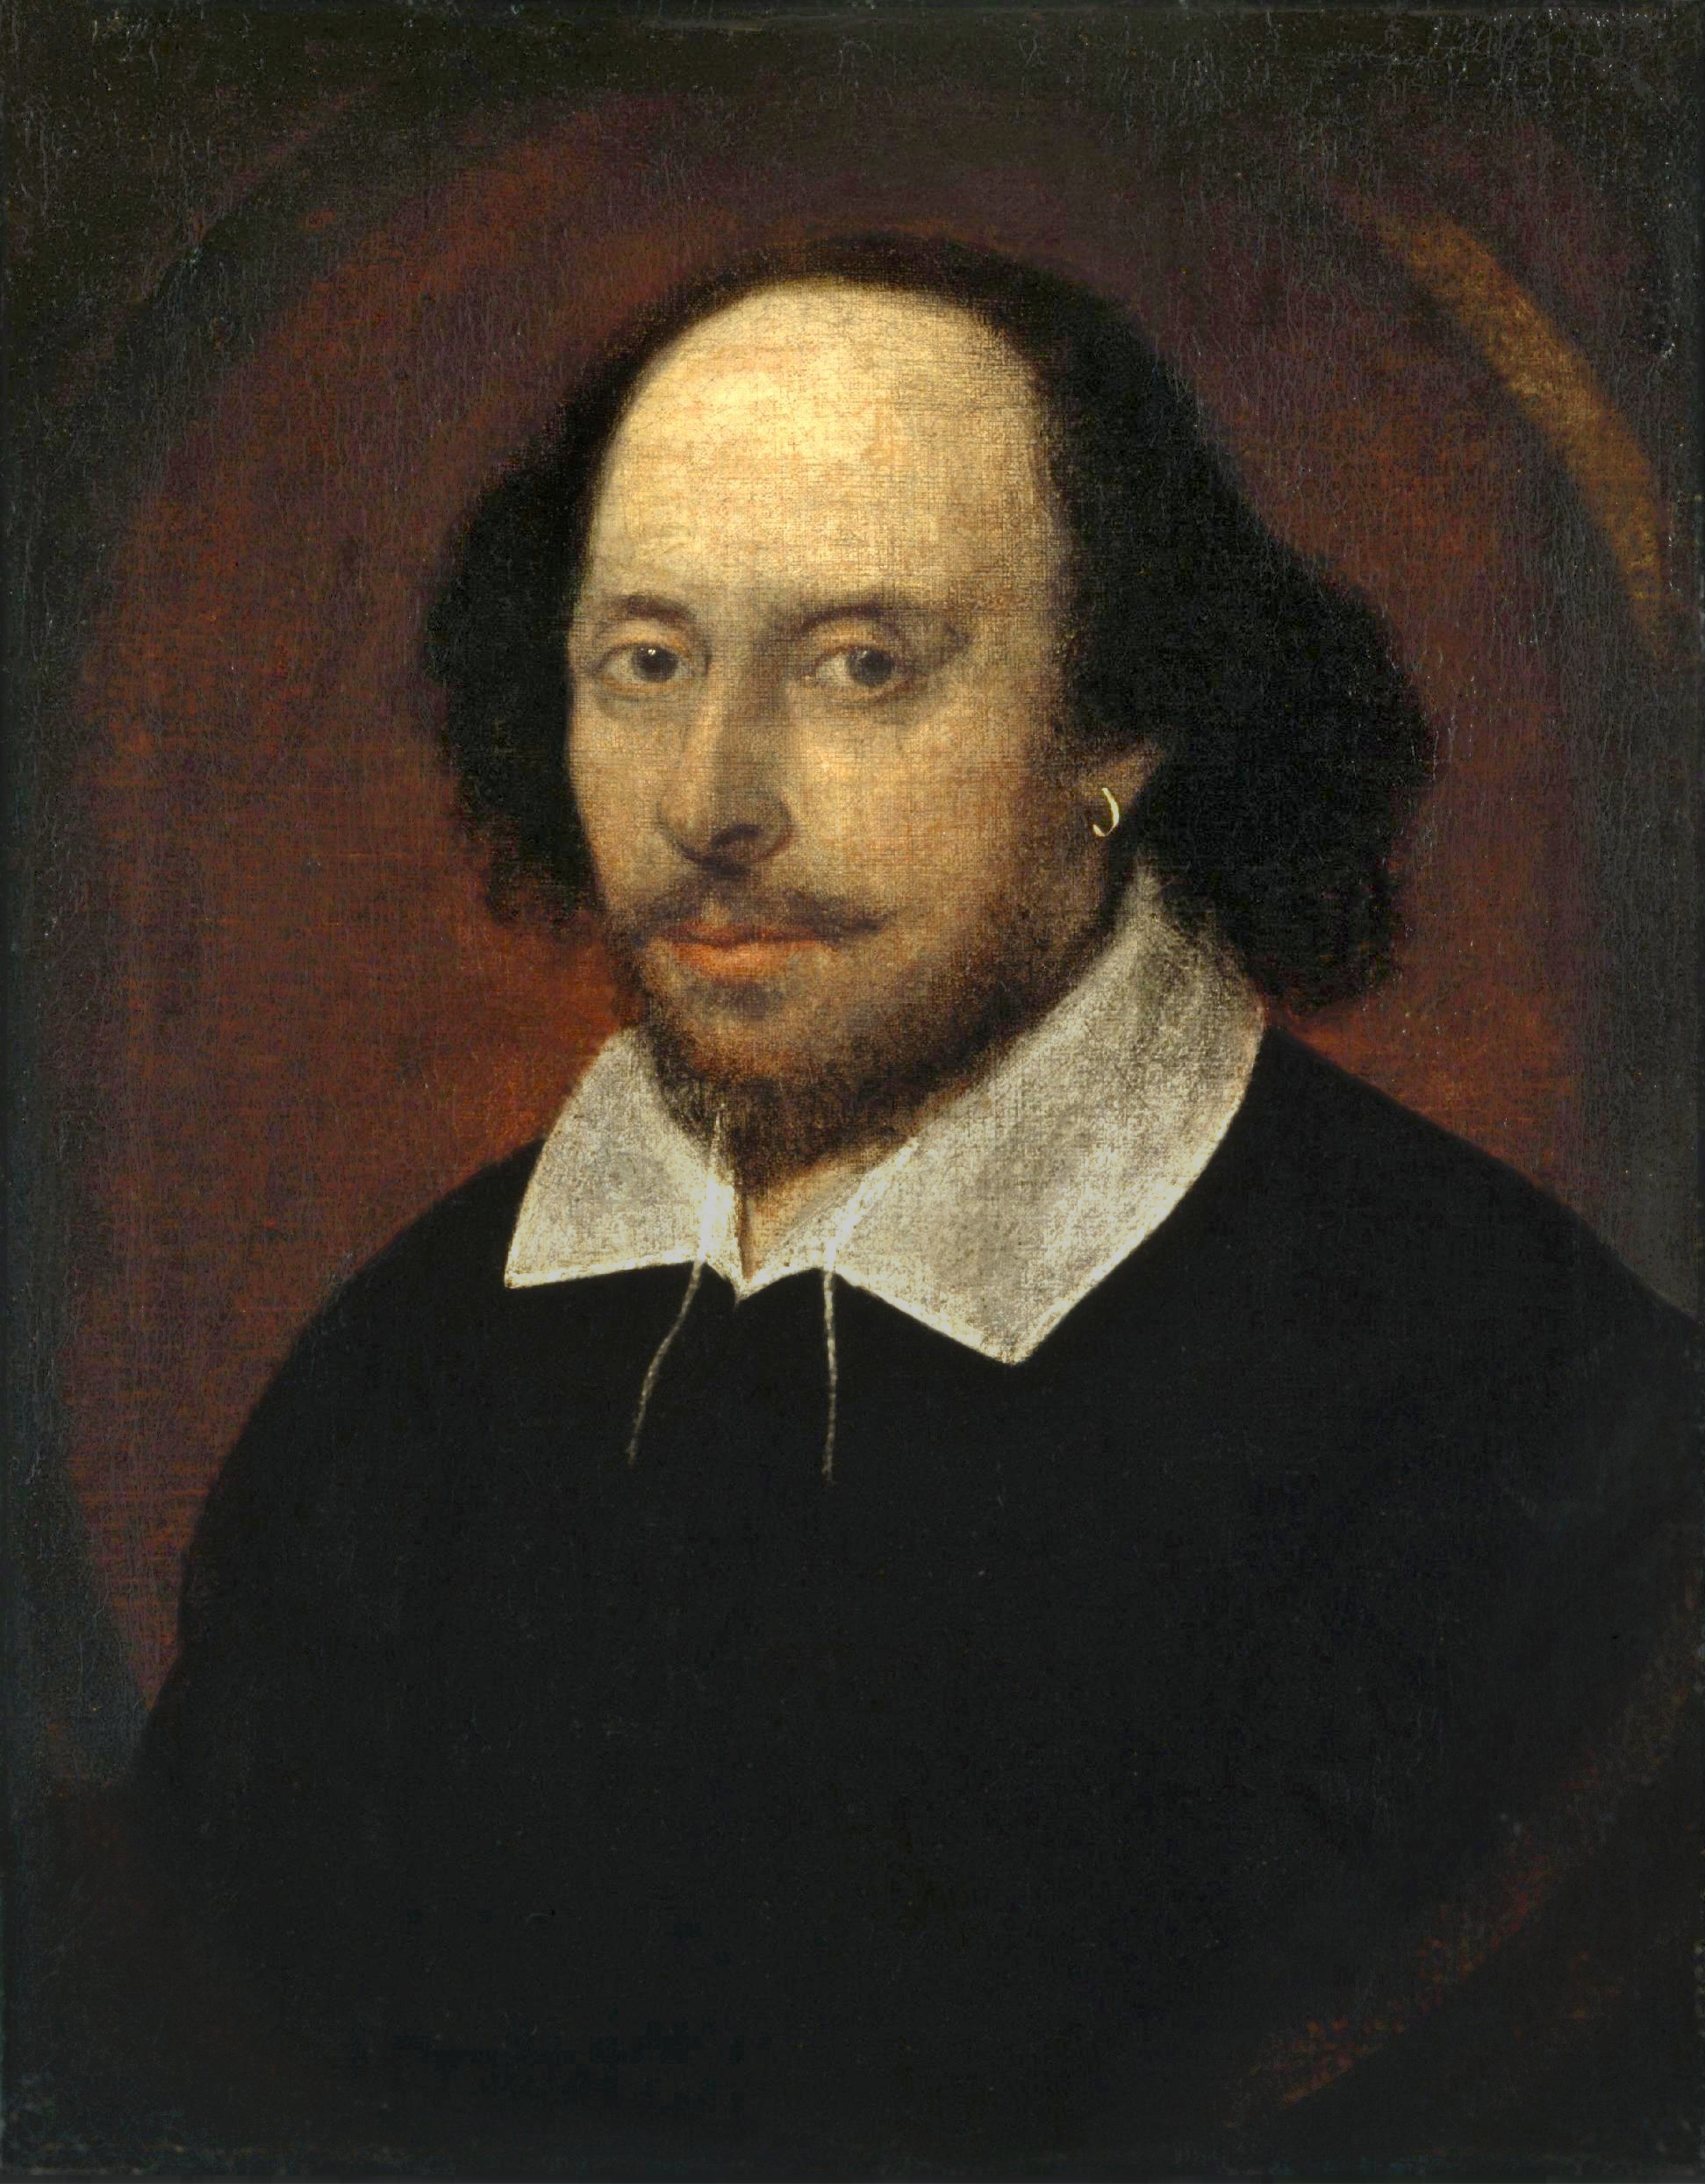 auteur William Shakespeare de la citation Le cours du véritable amour n'a jamais fonctionné en douceur.